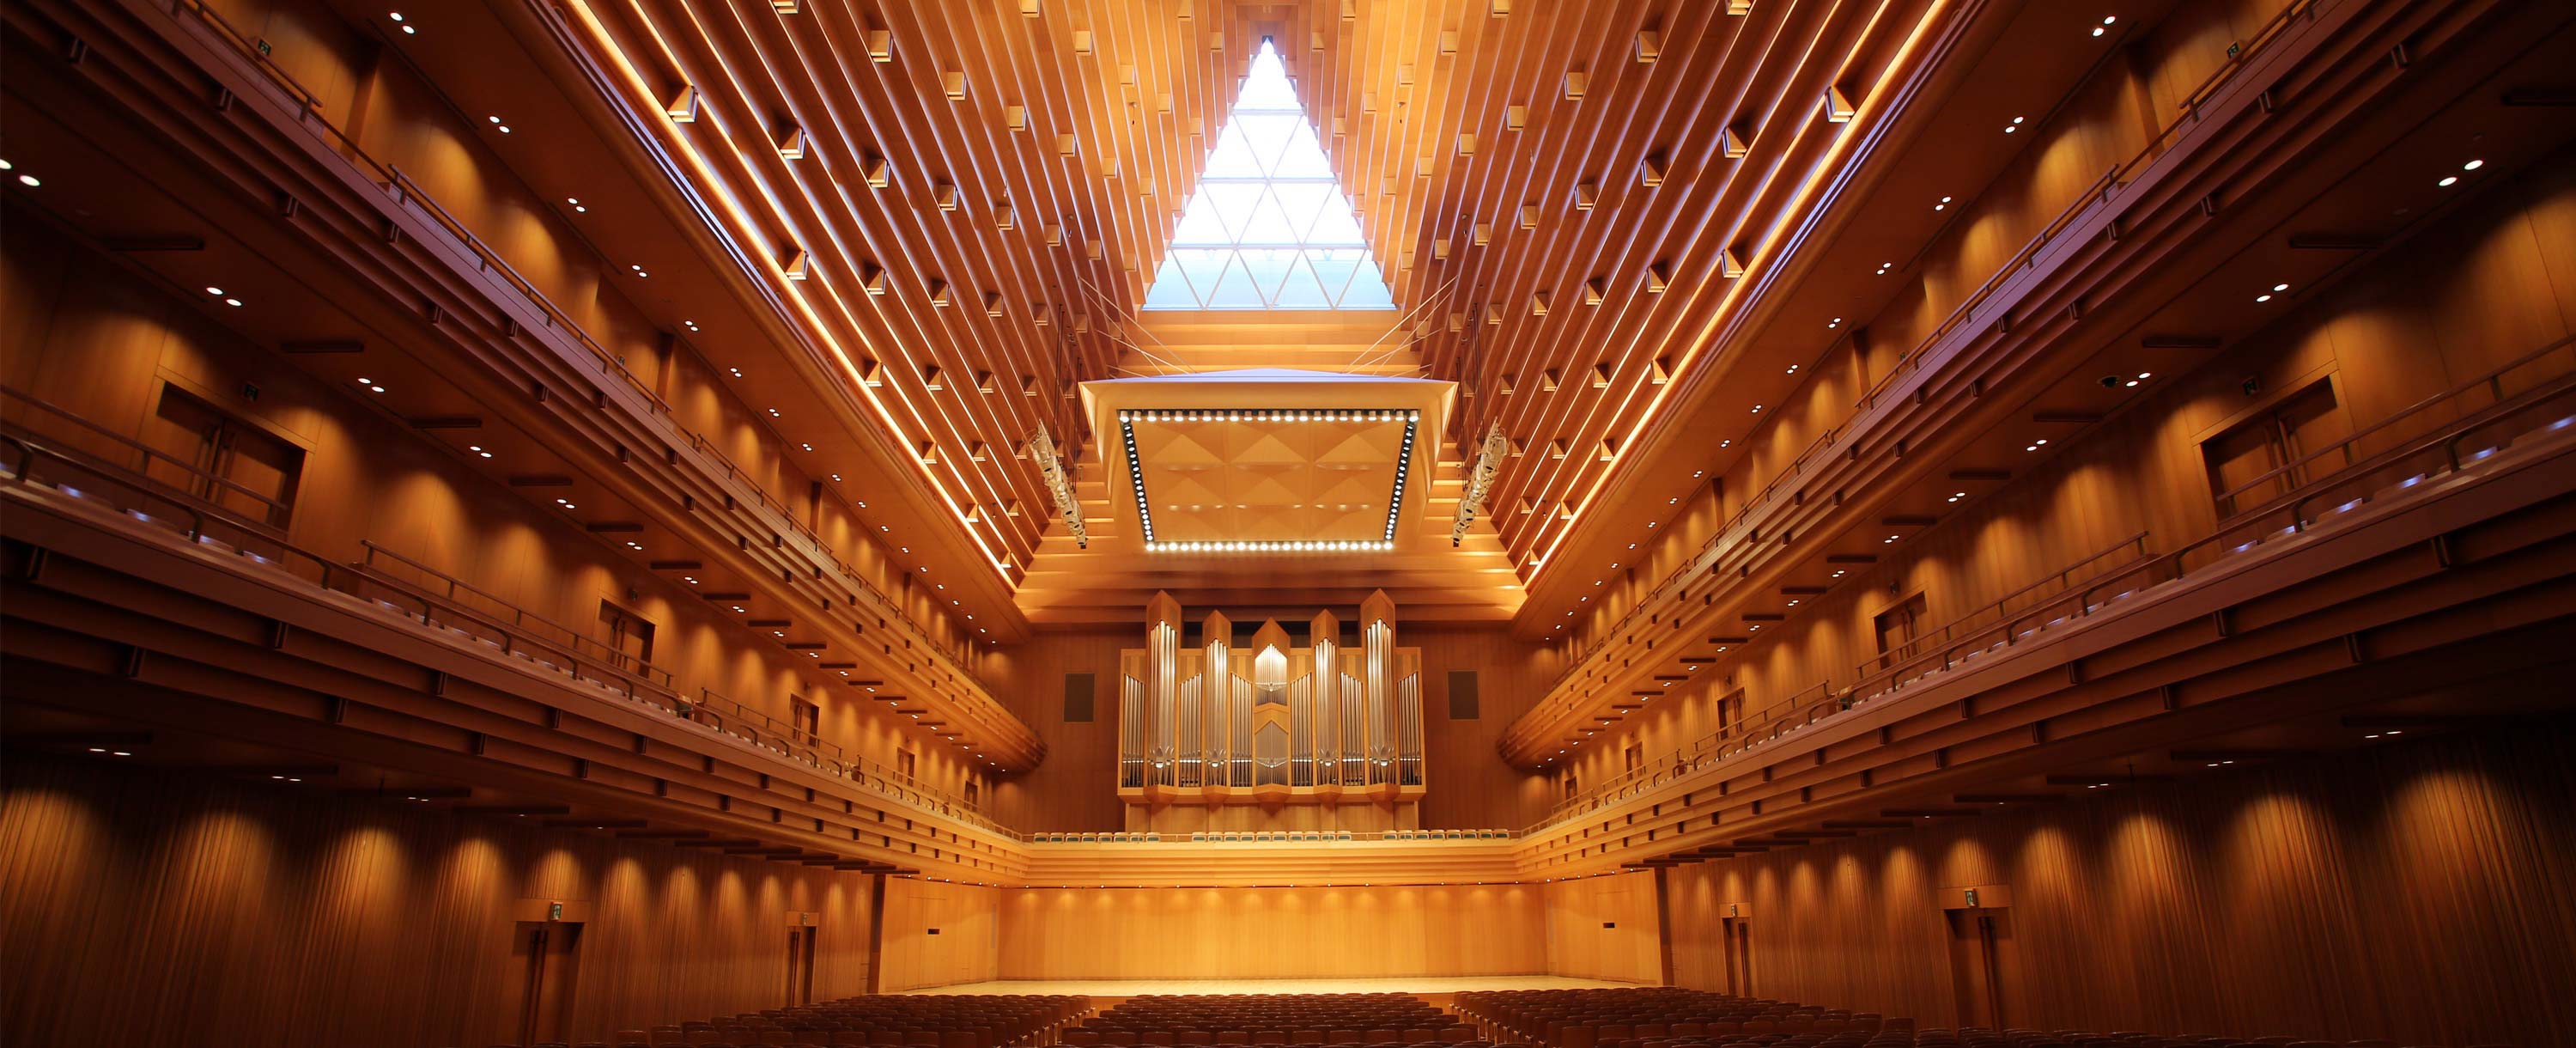 Tokyo Opera City Concert Hall / Recital Hall